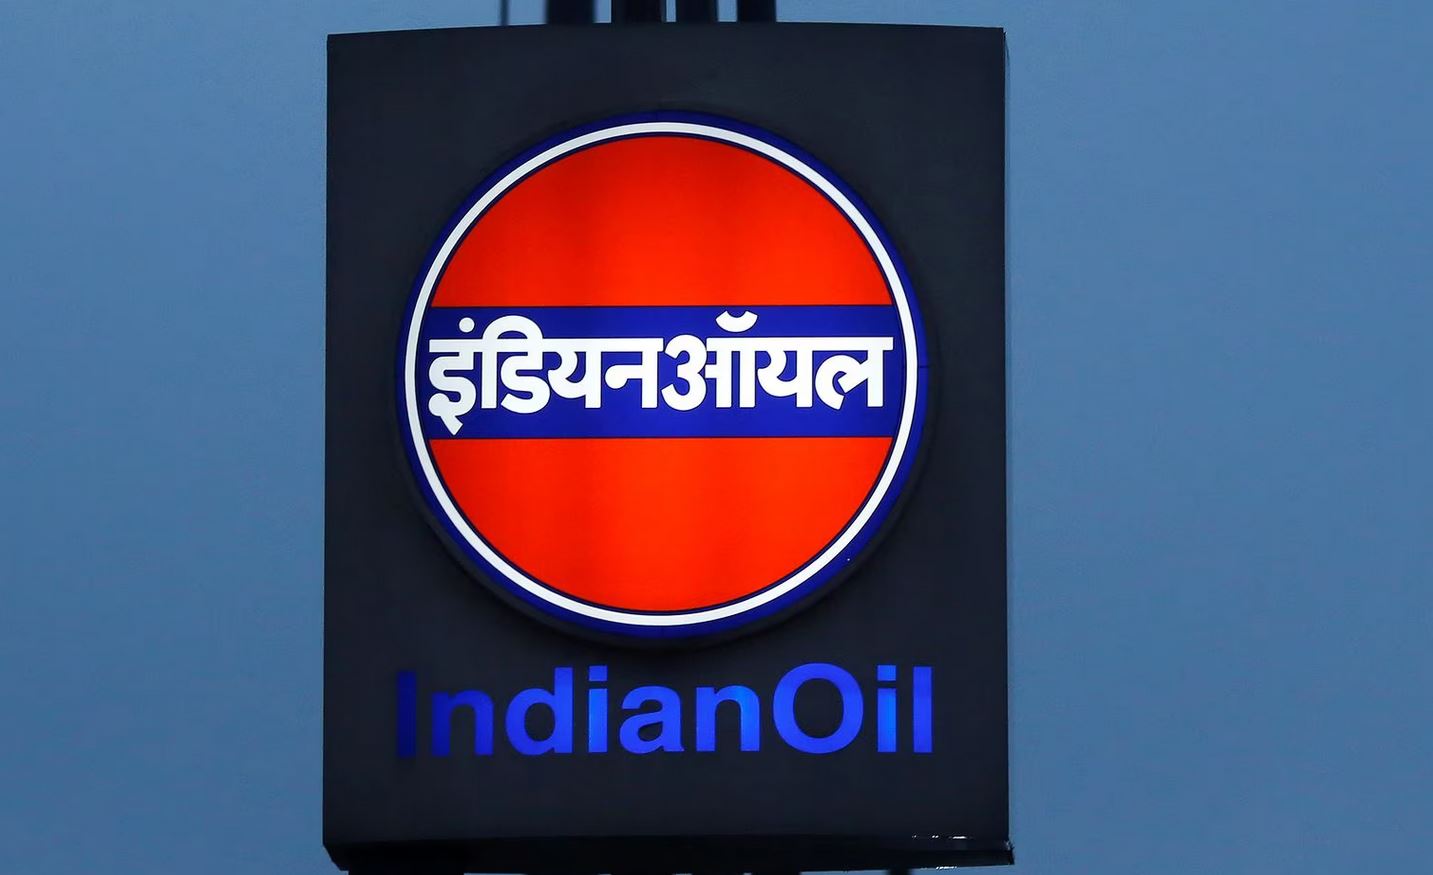  واردات نفت هند از روسیه رکورد زد 